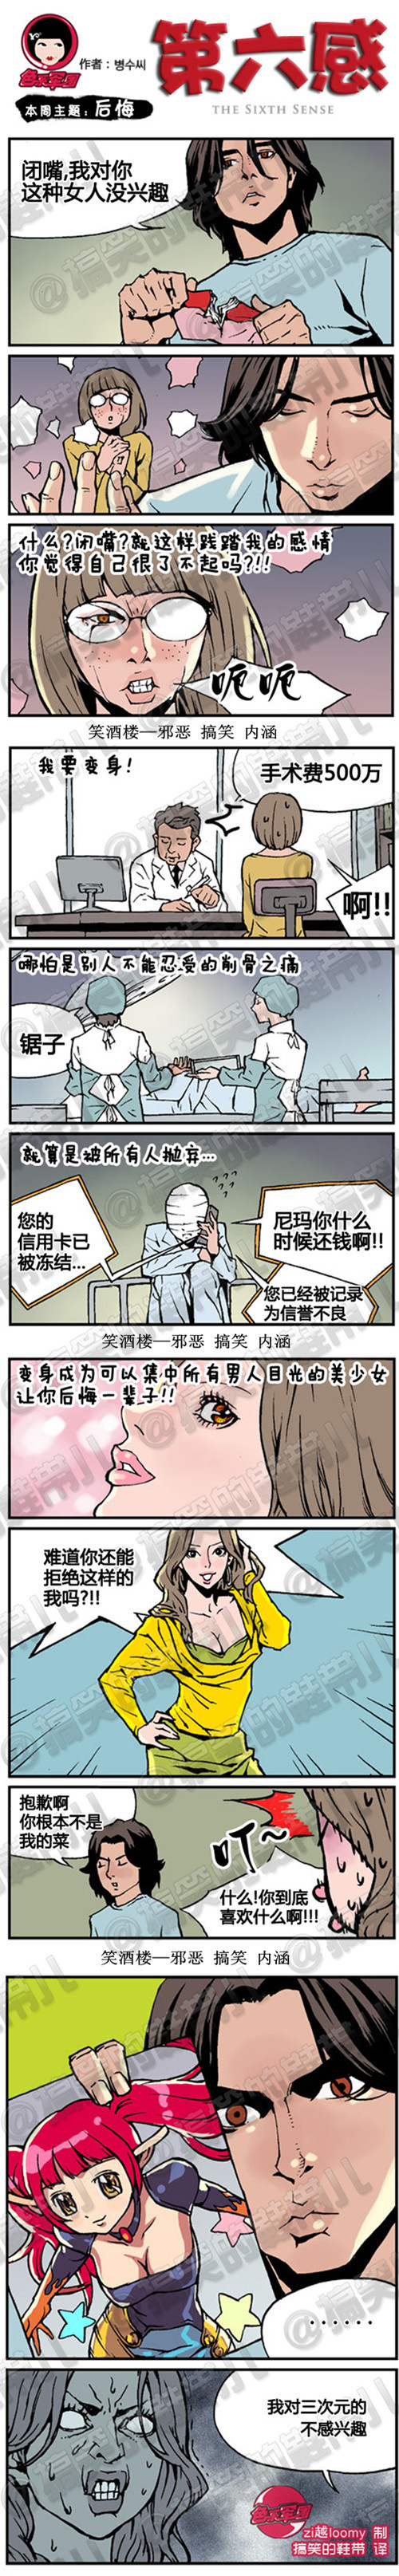 妖妖小精|第六感系列漫画之后悔